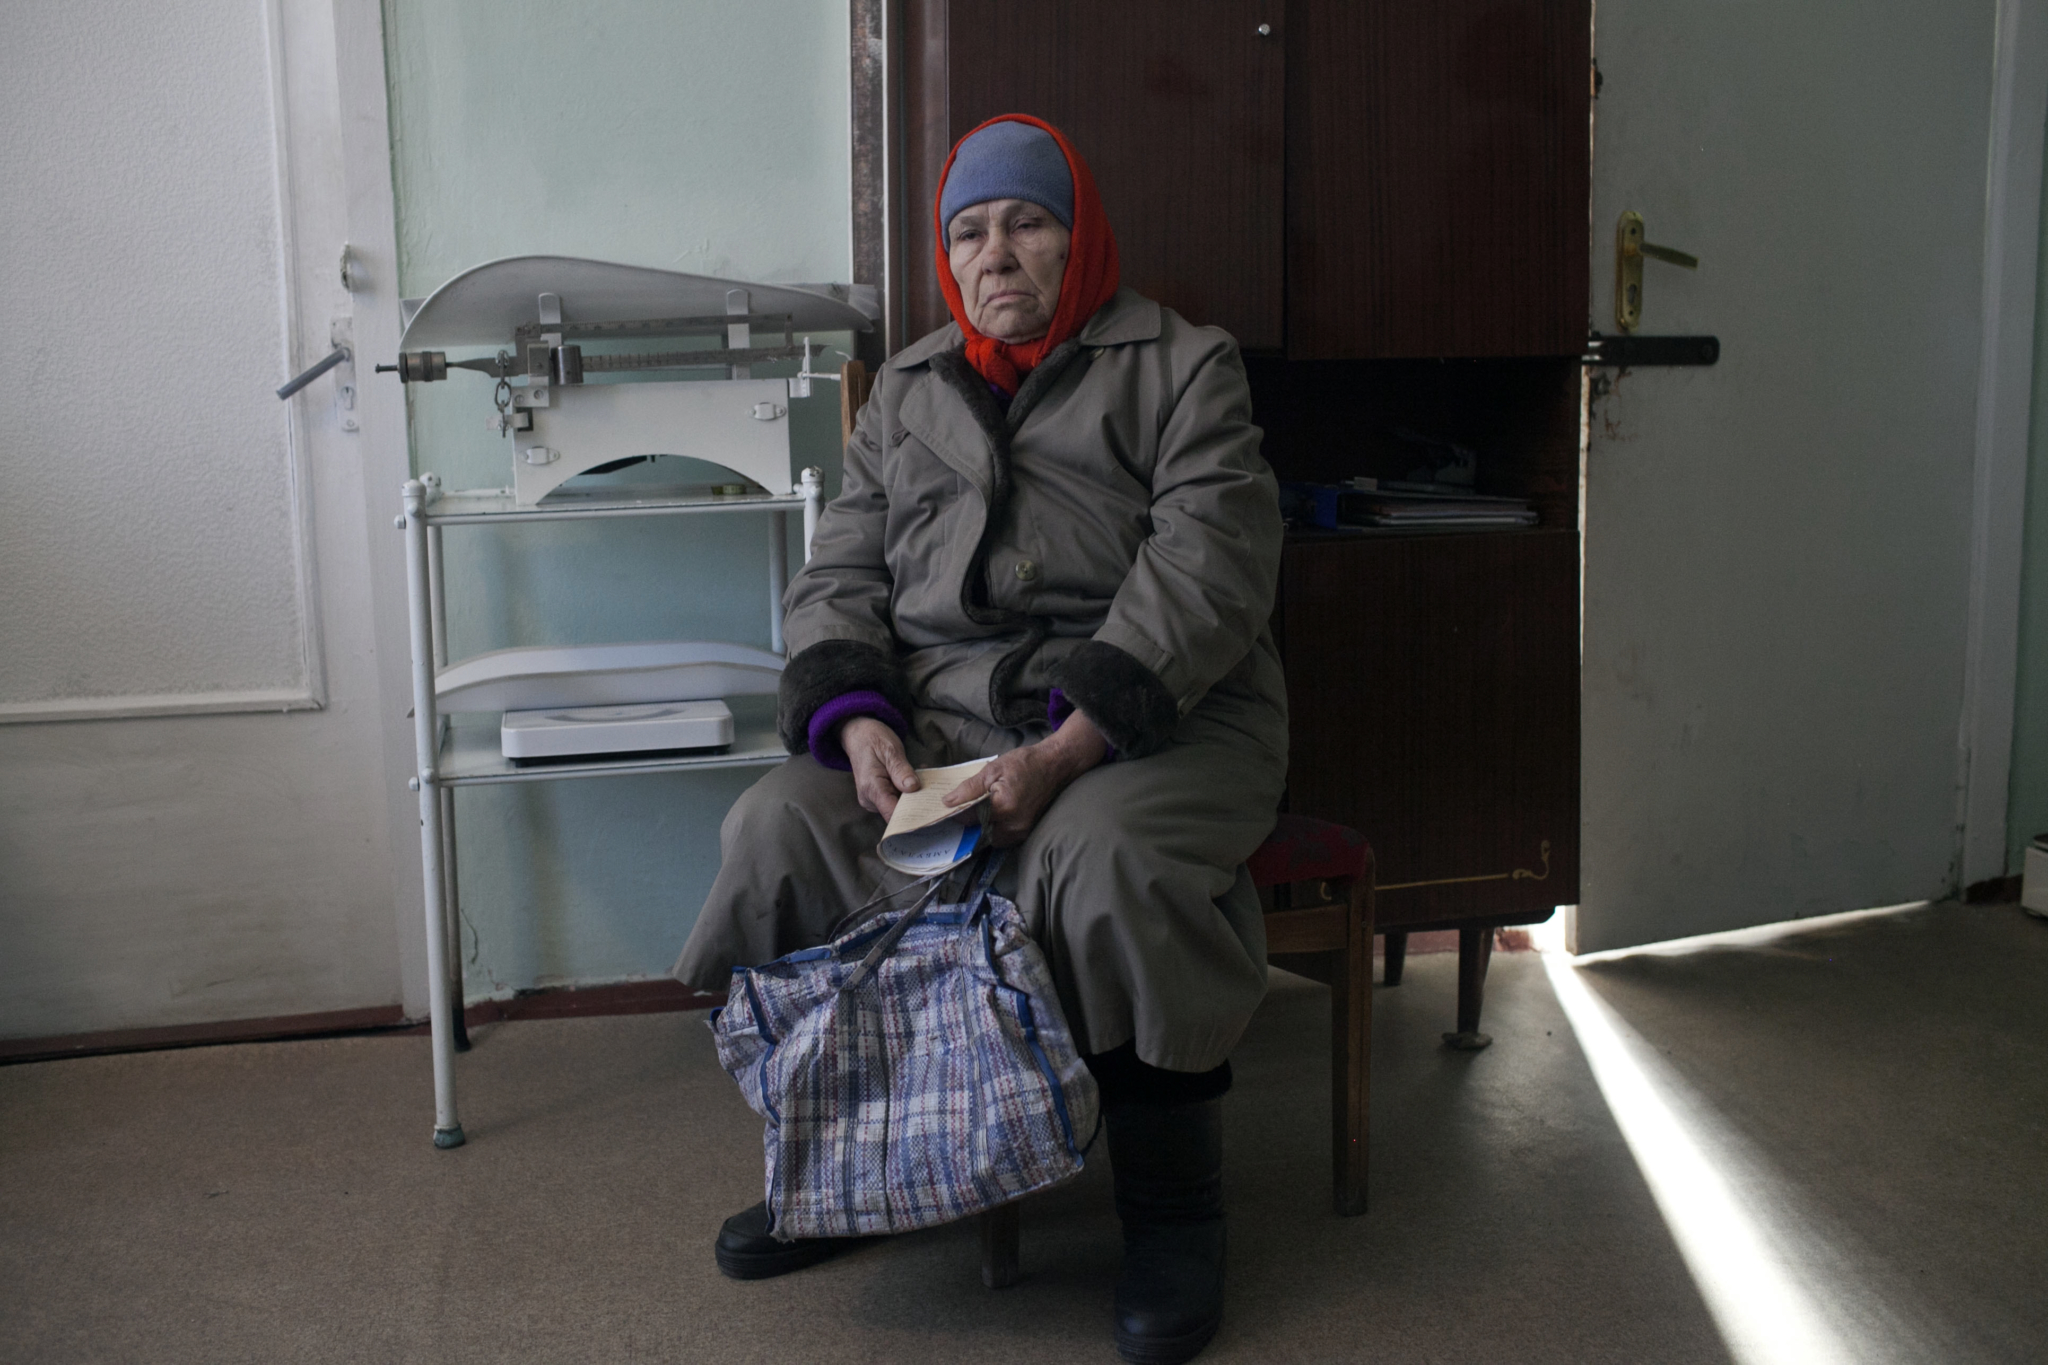 Enfermeiros montaram uma clínica improvisada em um prédio administrativo e atualmente um médico de MSF visita a instalação duas vezes por semana para oferecer consultas e medicamentos. Apenas no primeiro mês à frente das clínicas em Donetsk e Luhansk, médicos de MSF realizaram mais de 1.700 consultas, o que denota a enorme necessidade por cuidados de saúde e medicamentos nessas regiões.